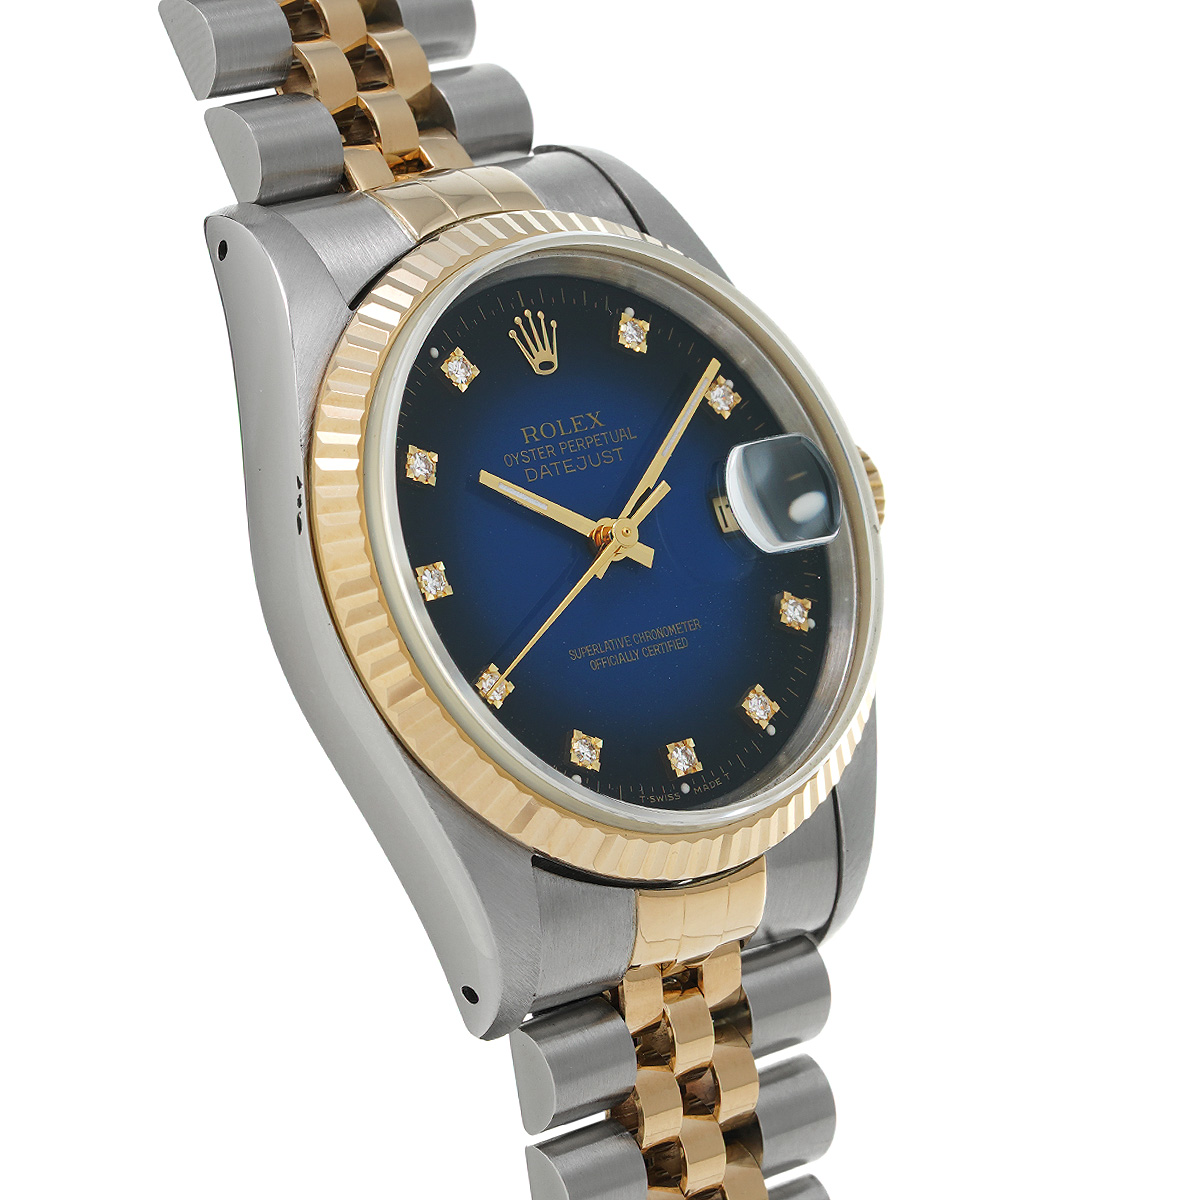 ロレックス ROLEX 16233G X番(1993年頃製造) ブルー・グラデーション /ダイヤモンド メンズ 腕時計